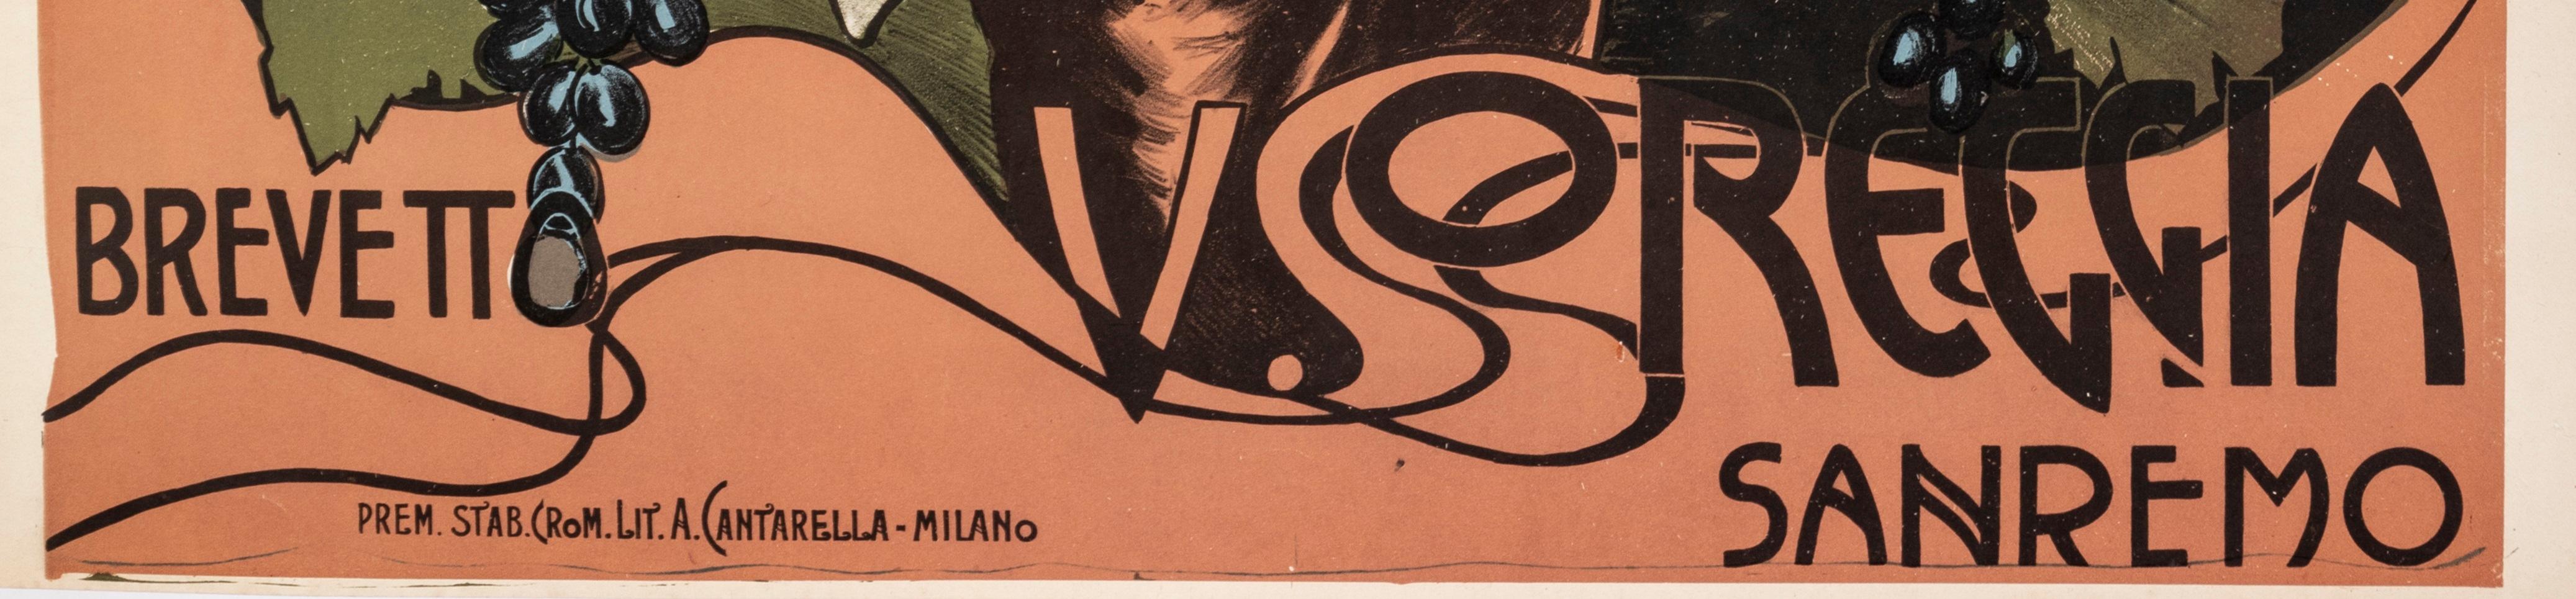 Affiche originale Art Nouveau créée vers 1910 pour la nouvelle machine à soufre Oreggia.

Artistics : Horst Mundschitz
Titre : Nueva Zolforatrice
Date : vers 1910
Taille (l x h) : 29.9 x 39.4 in / 76 x 100 cm
Imprimeur : Prem. Poignardé. Crom. Lit.